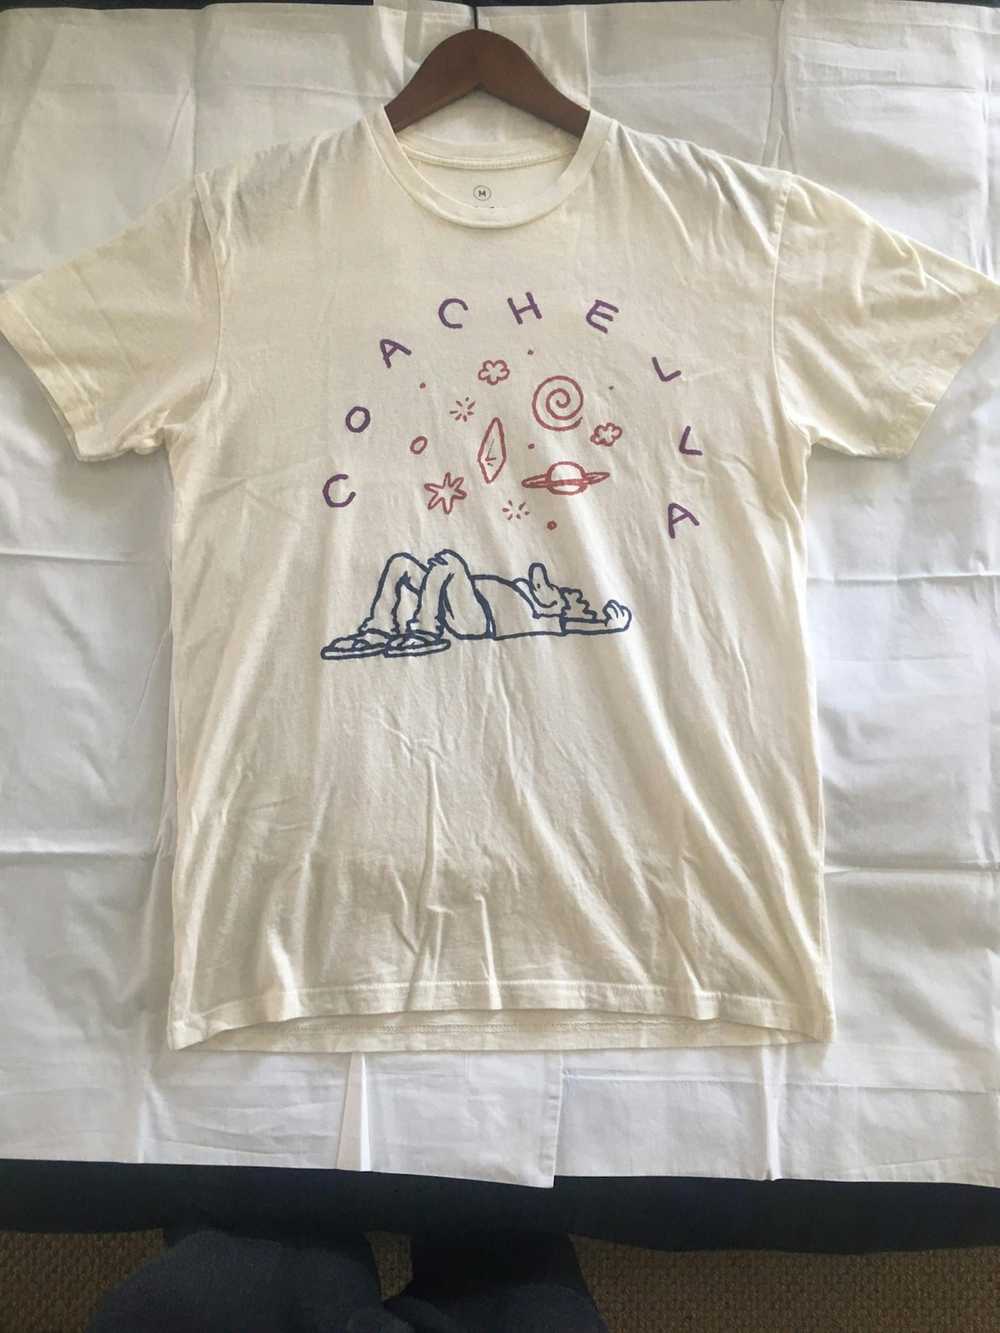 Coachella Coachella 2016 T-shirt Medium - image 3